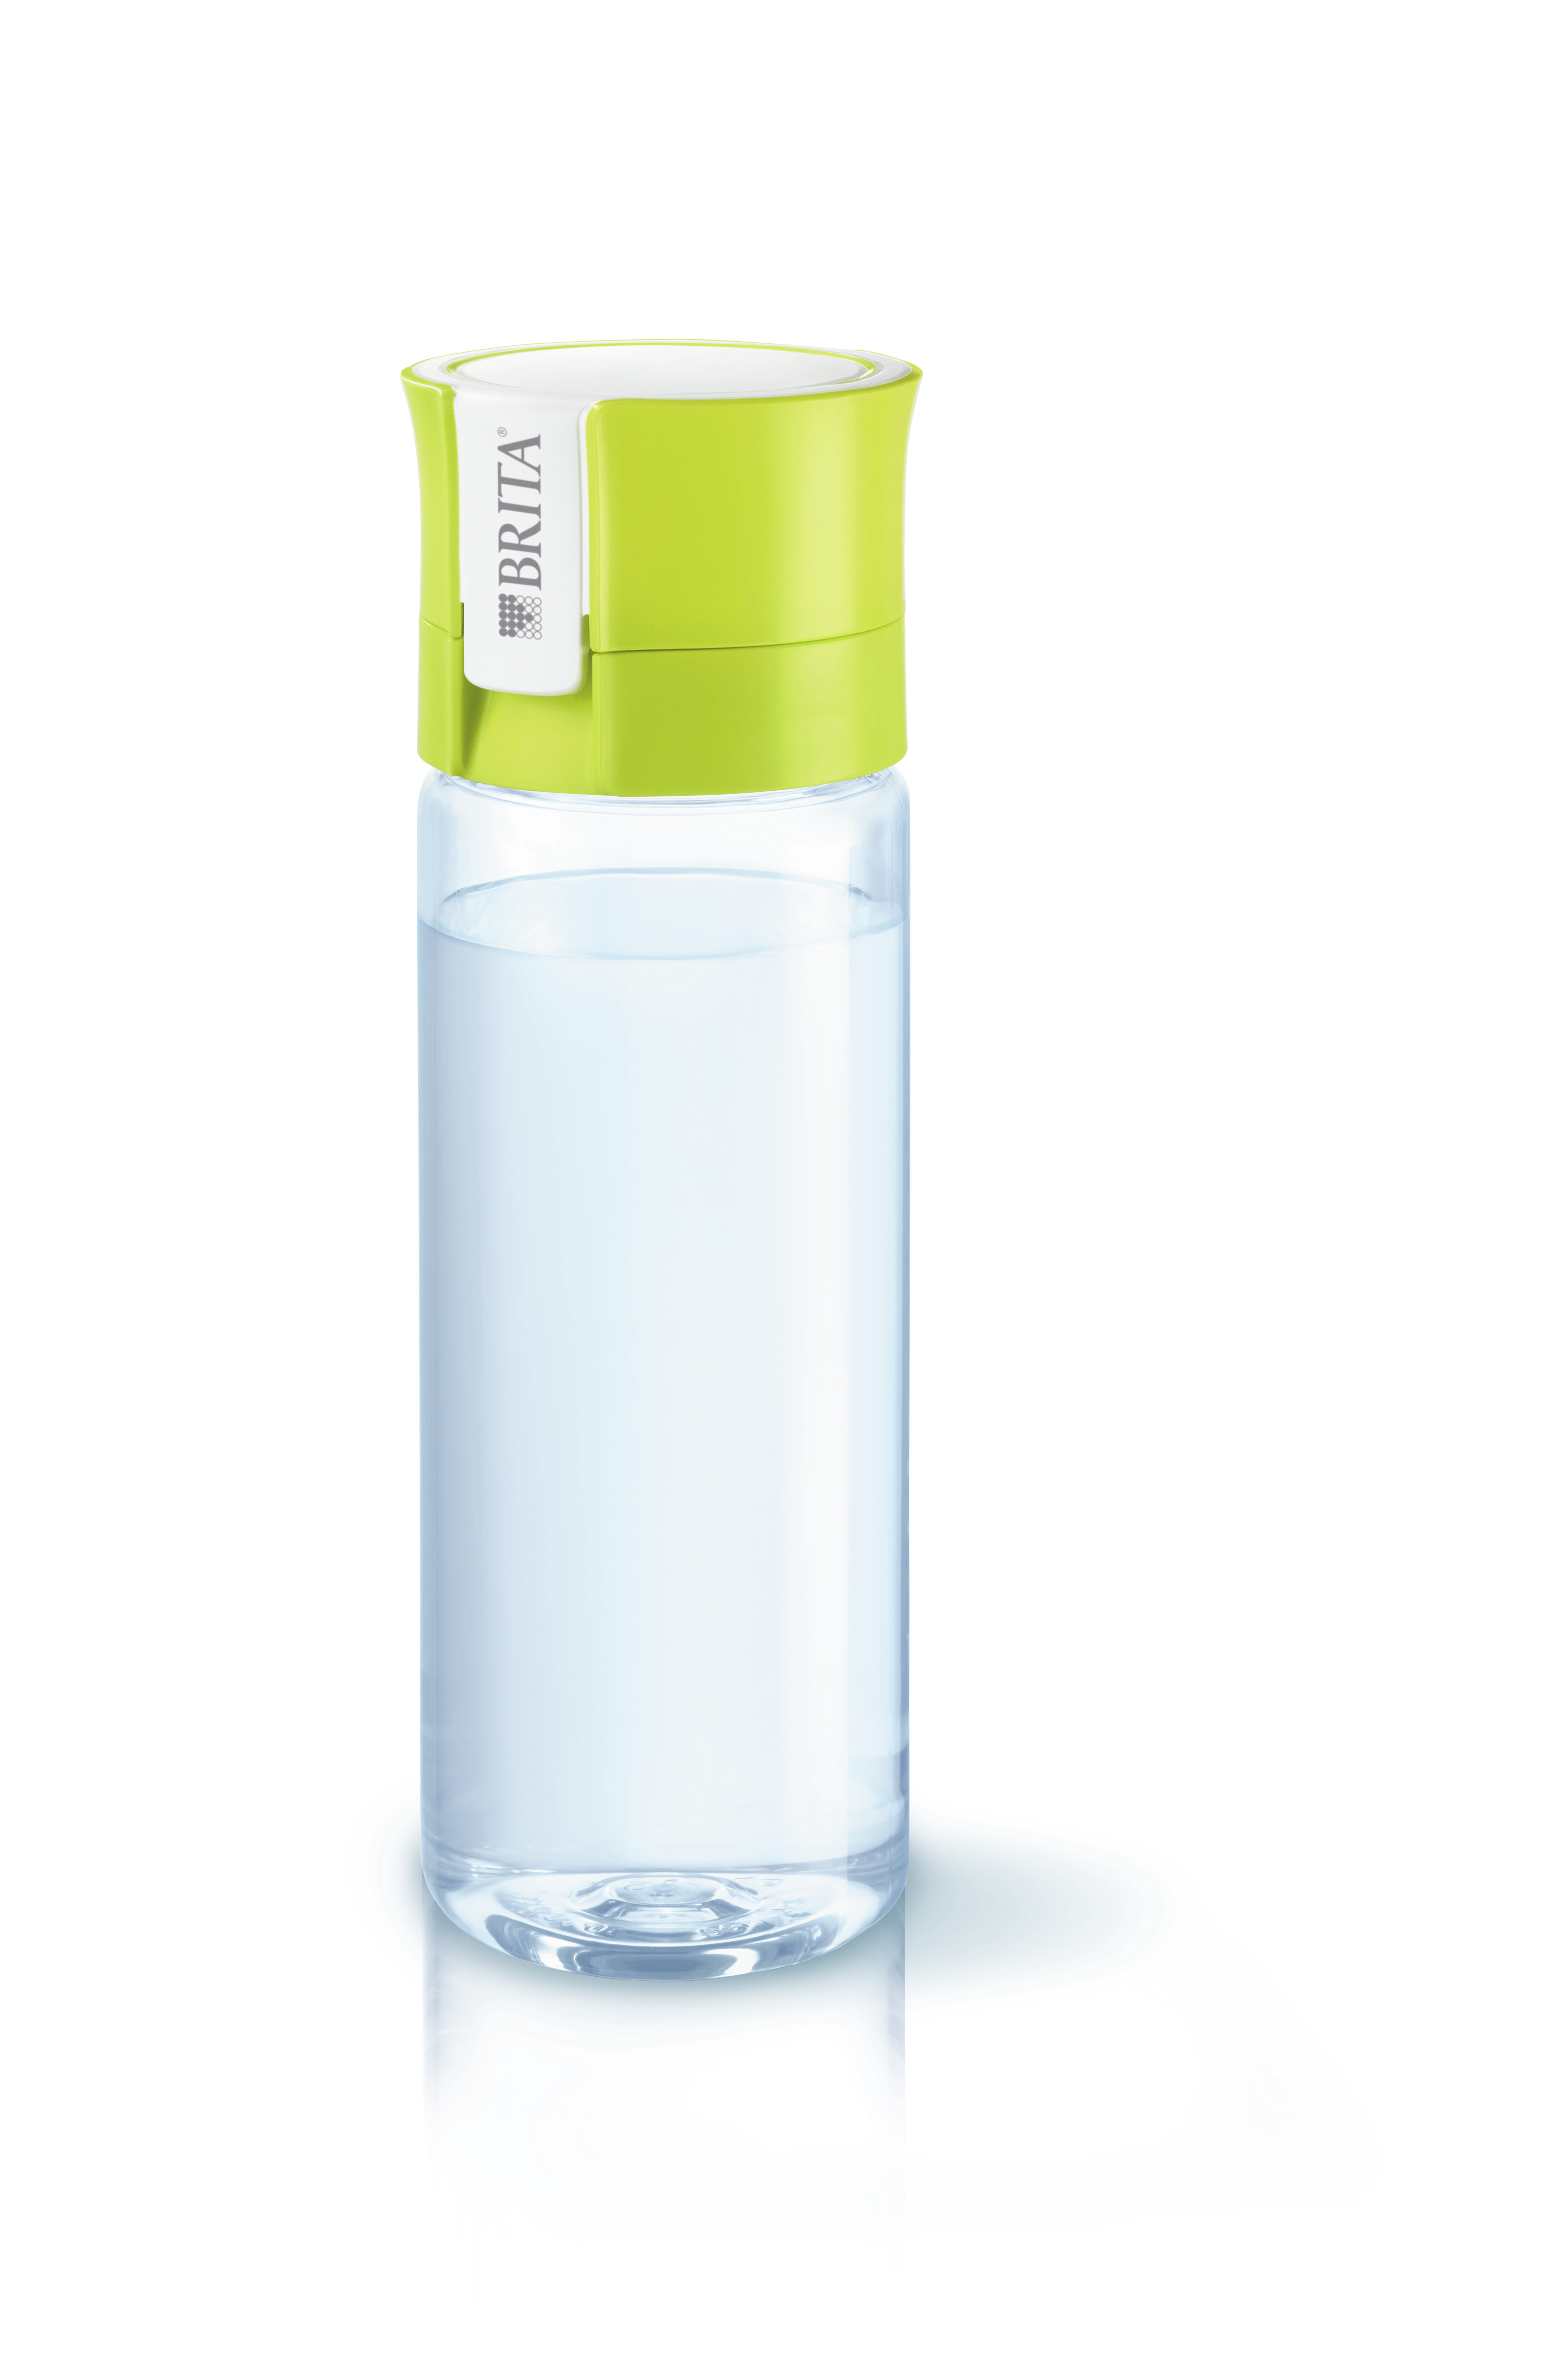 Brita : la nouvelle bouteille filtrante pour une eau saine